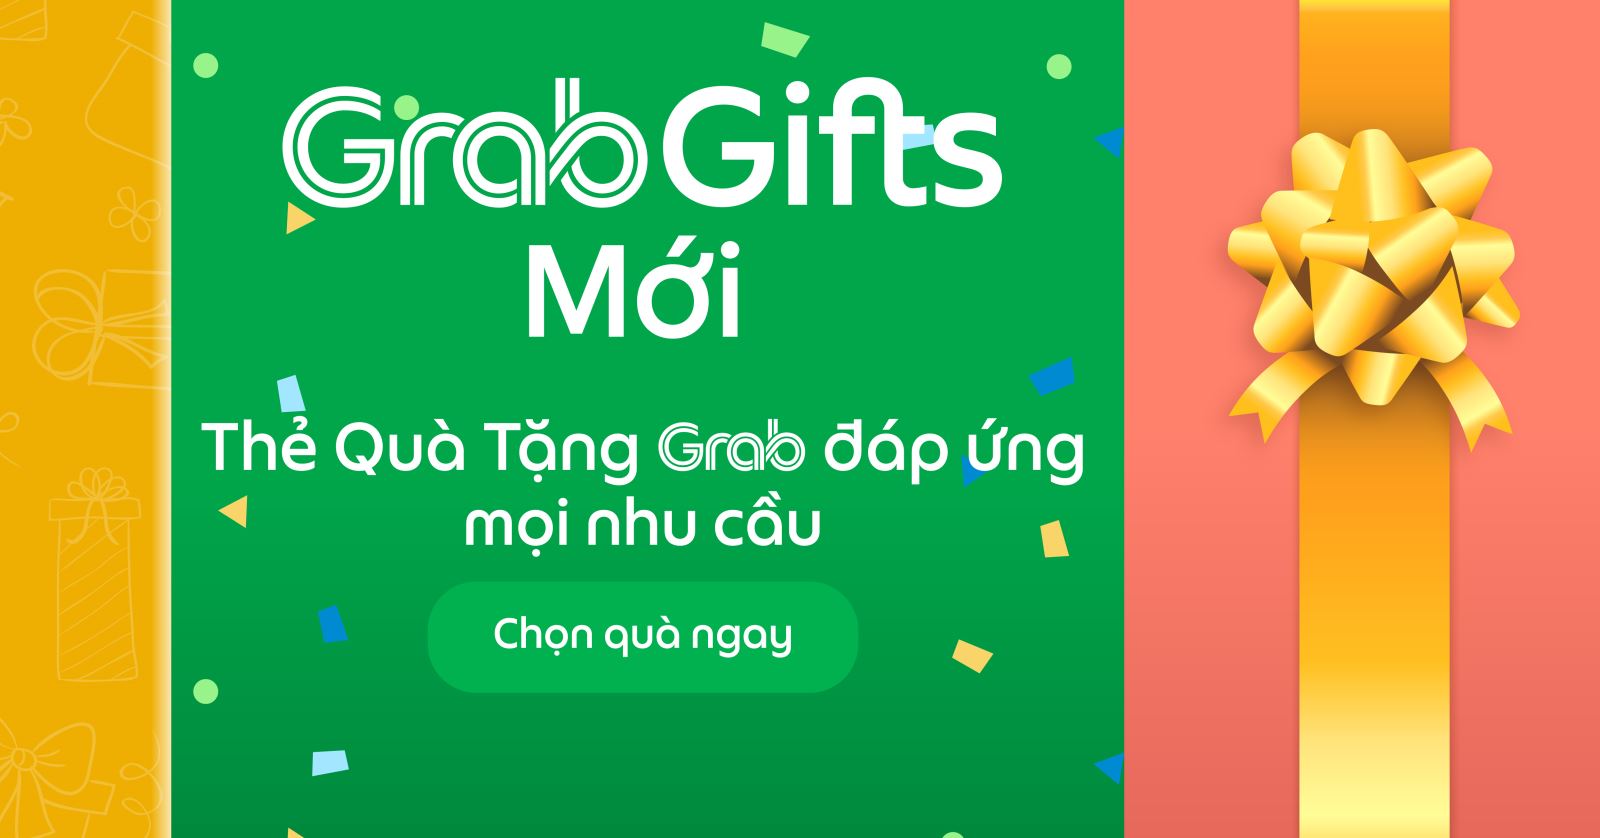 Với thẻ quà tặng GrabGifts, bạn có thể dành tặng những món quà ý nghĩa cho người thân, bạn bè chỉ bằng vài thao tác đơn giản trên ứng dụng Grab. Hãy xem hình và khám phá thêm về những món quà đa dạng và phong phú mà thẻ quà này mang lại nhé!